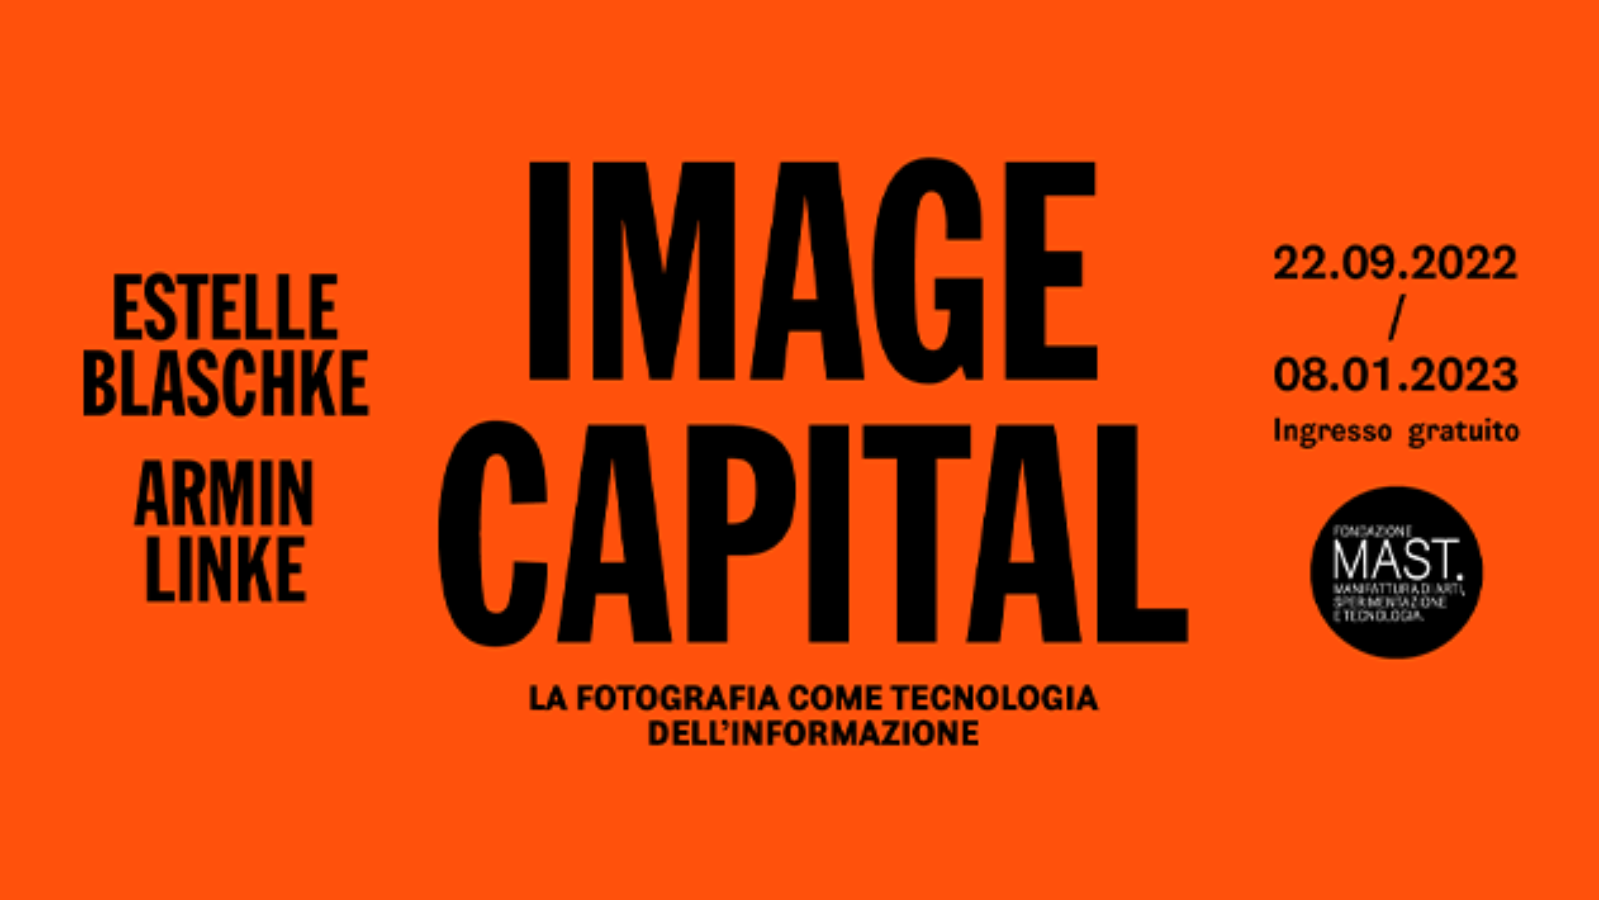 Mostra Image Capital Fondazione MAST